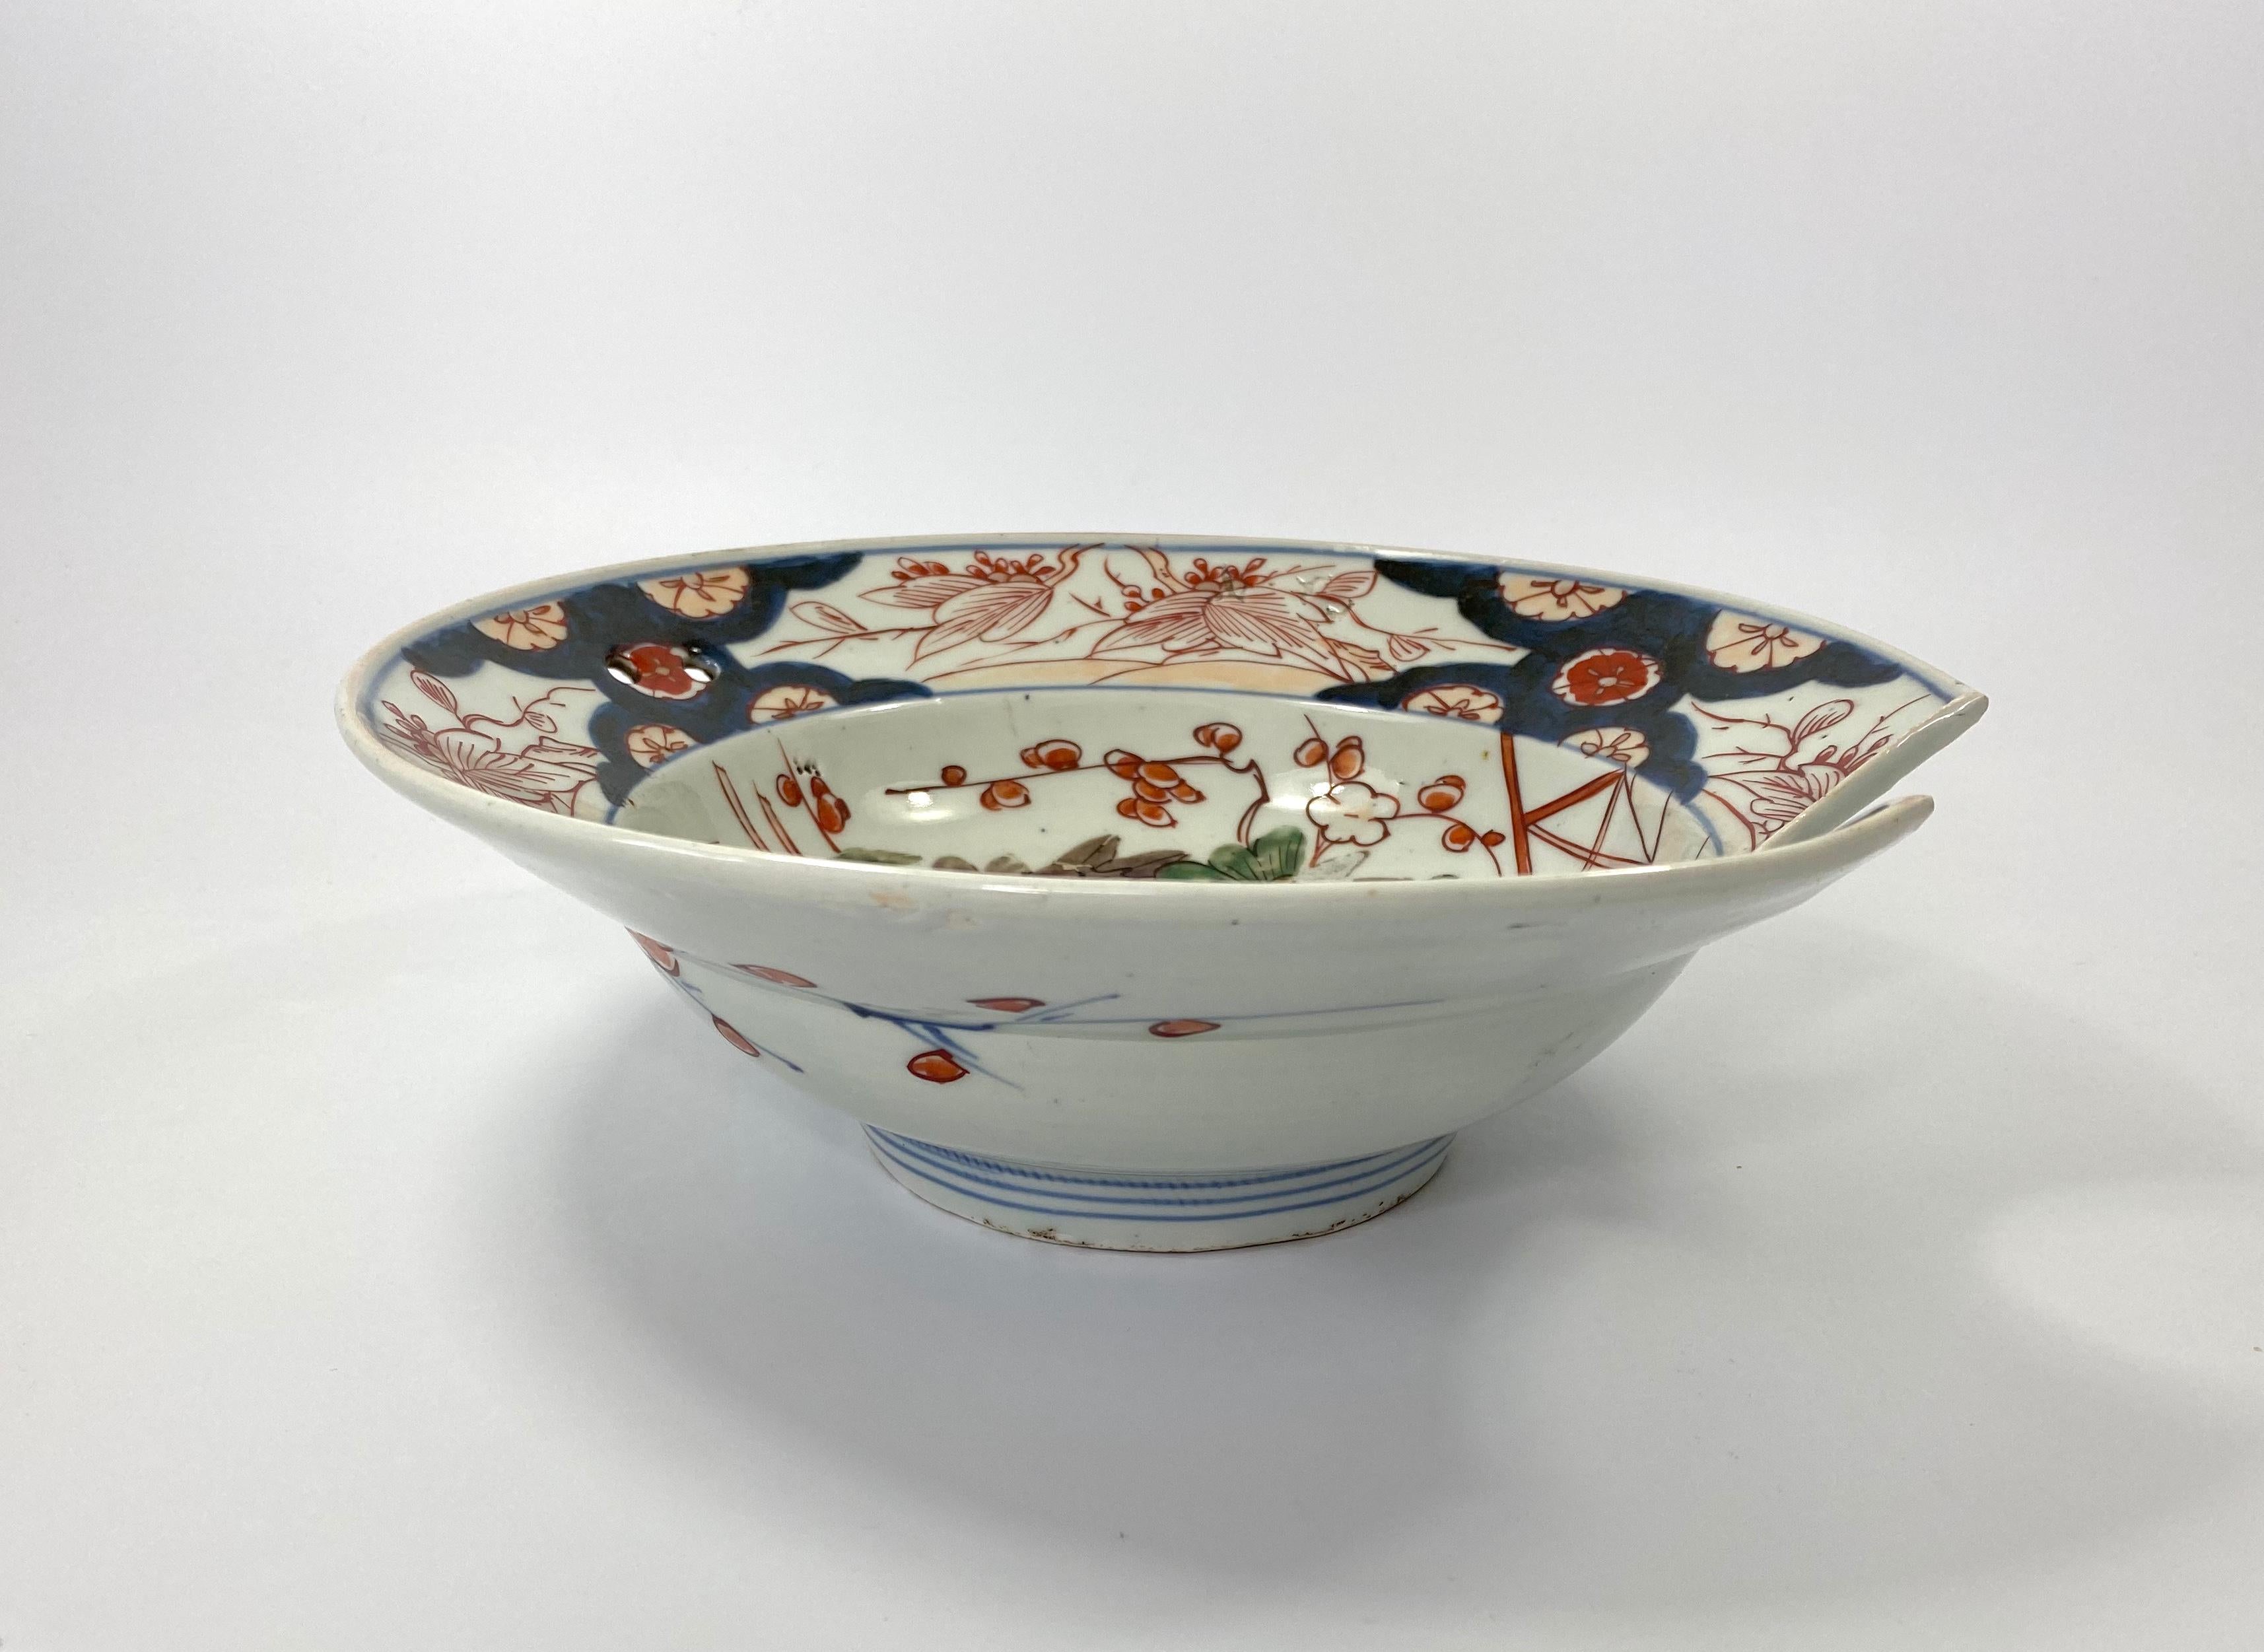 Porcelain Japanese Imari Barbers Bowl, c. 1700, Edo Period